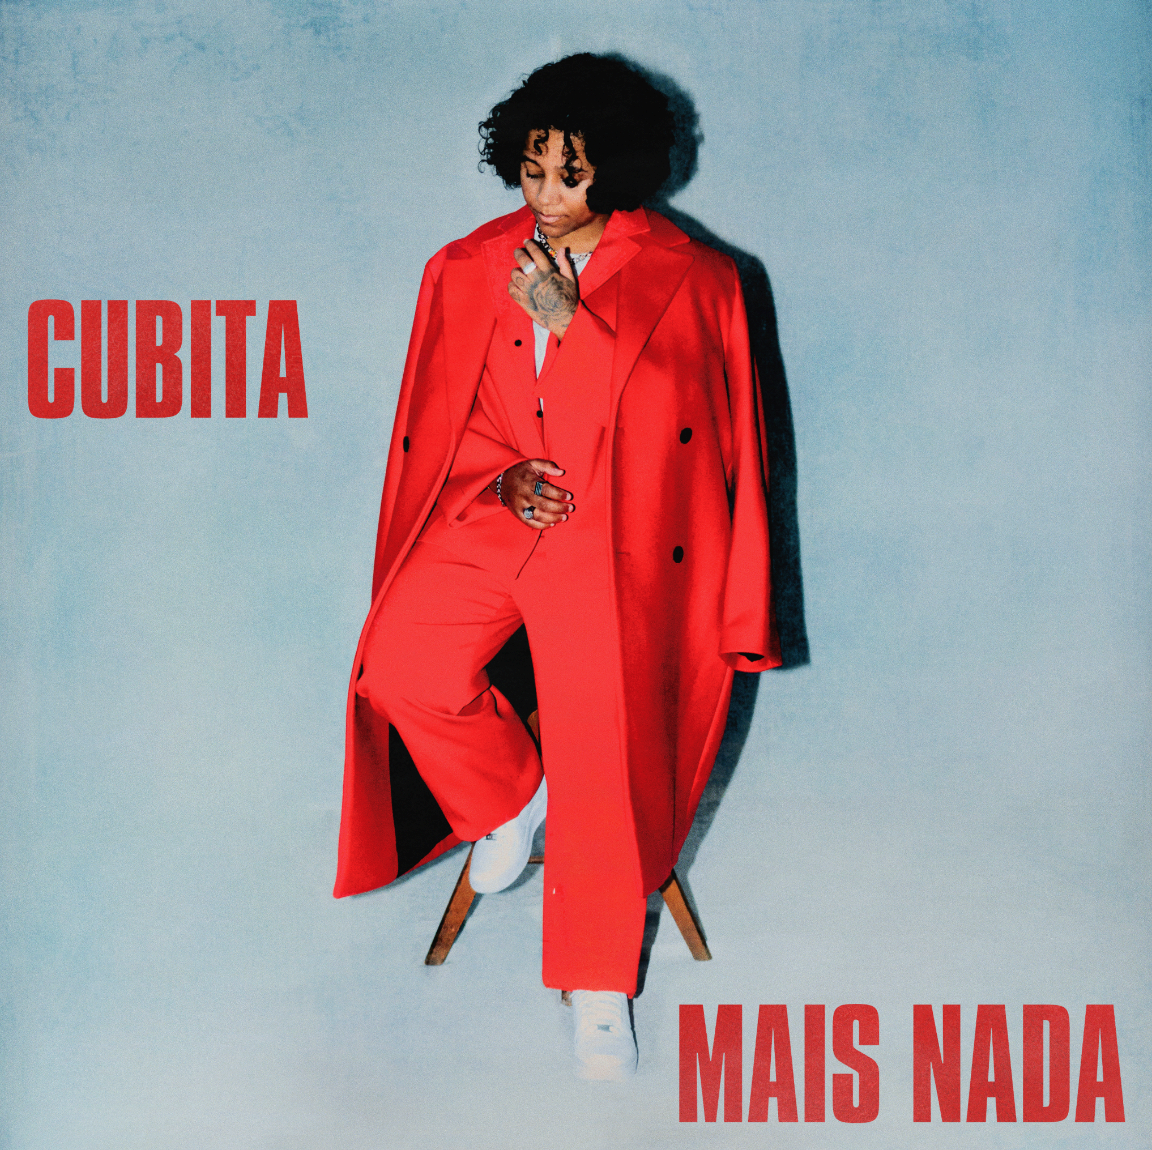 Cubita lança novo single, “Mais Nada”